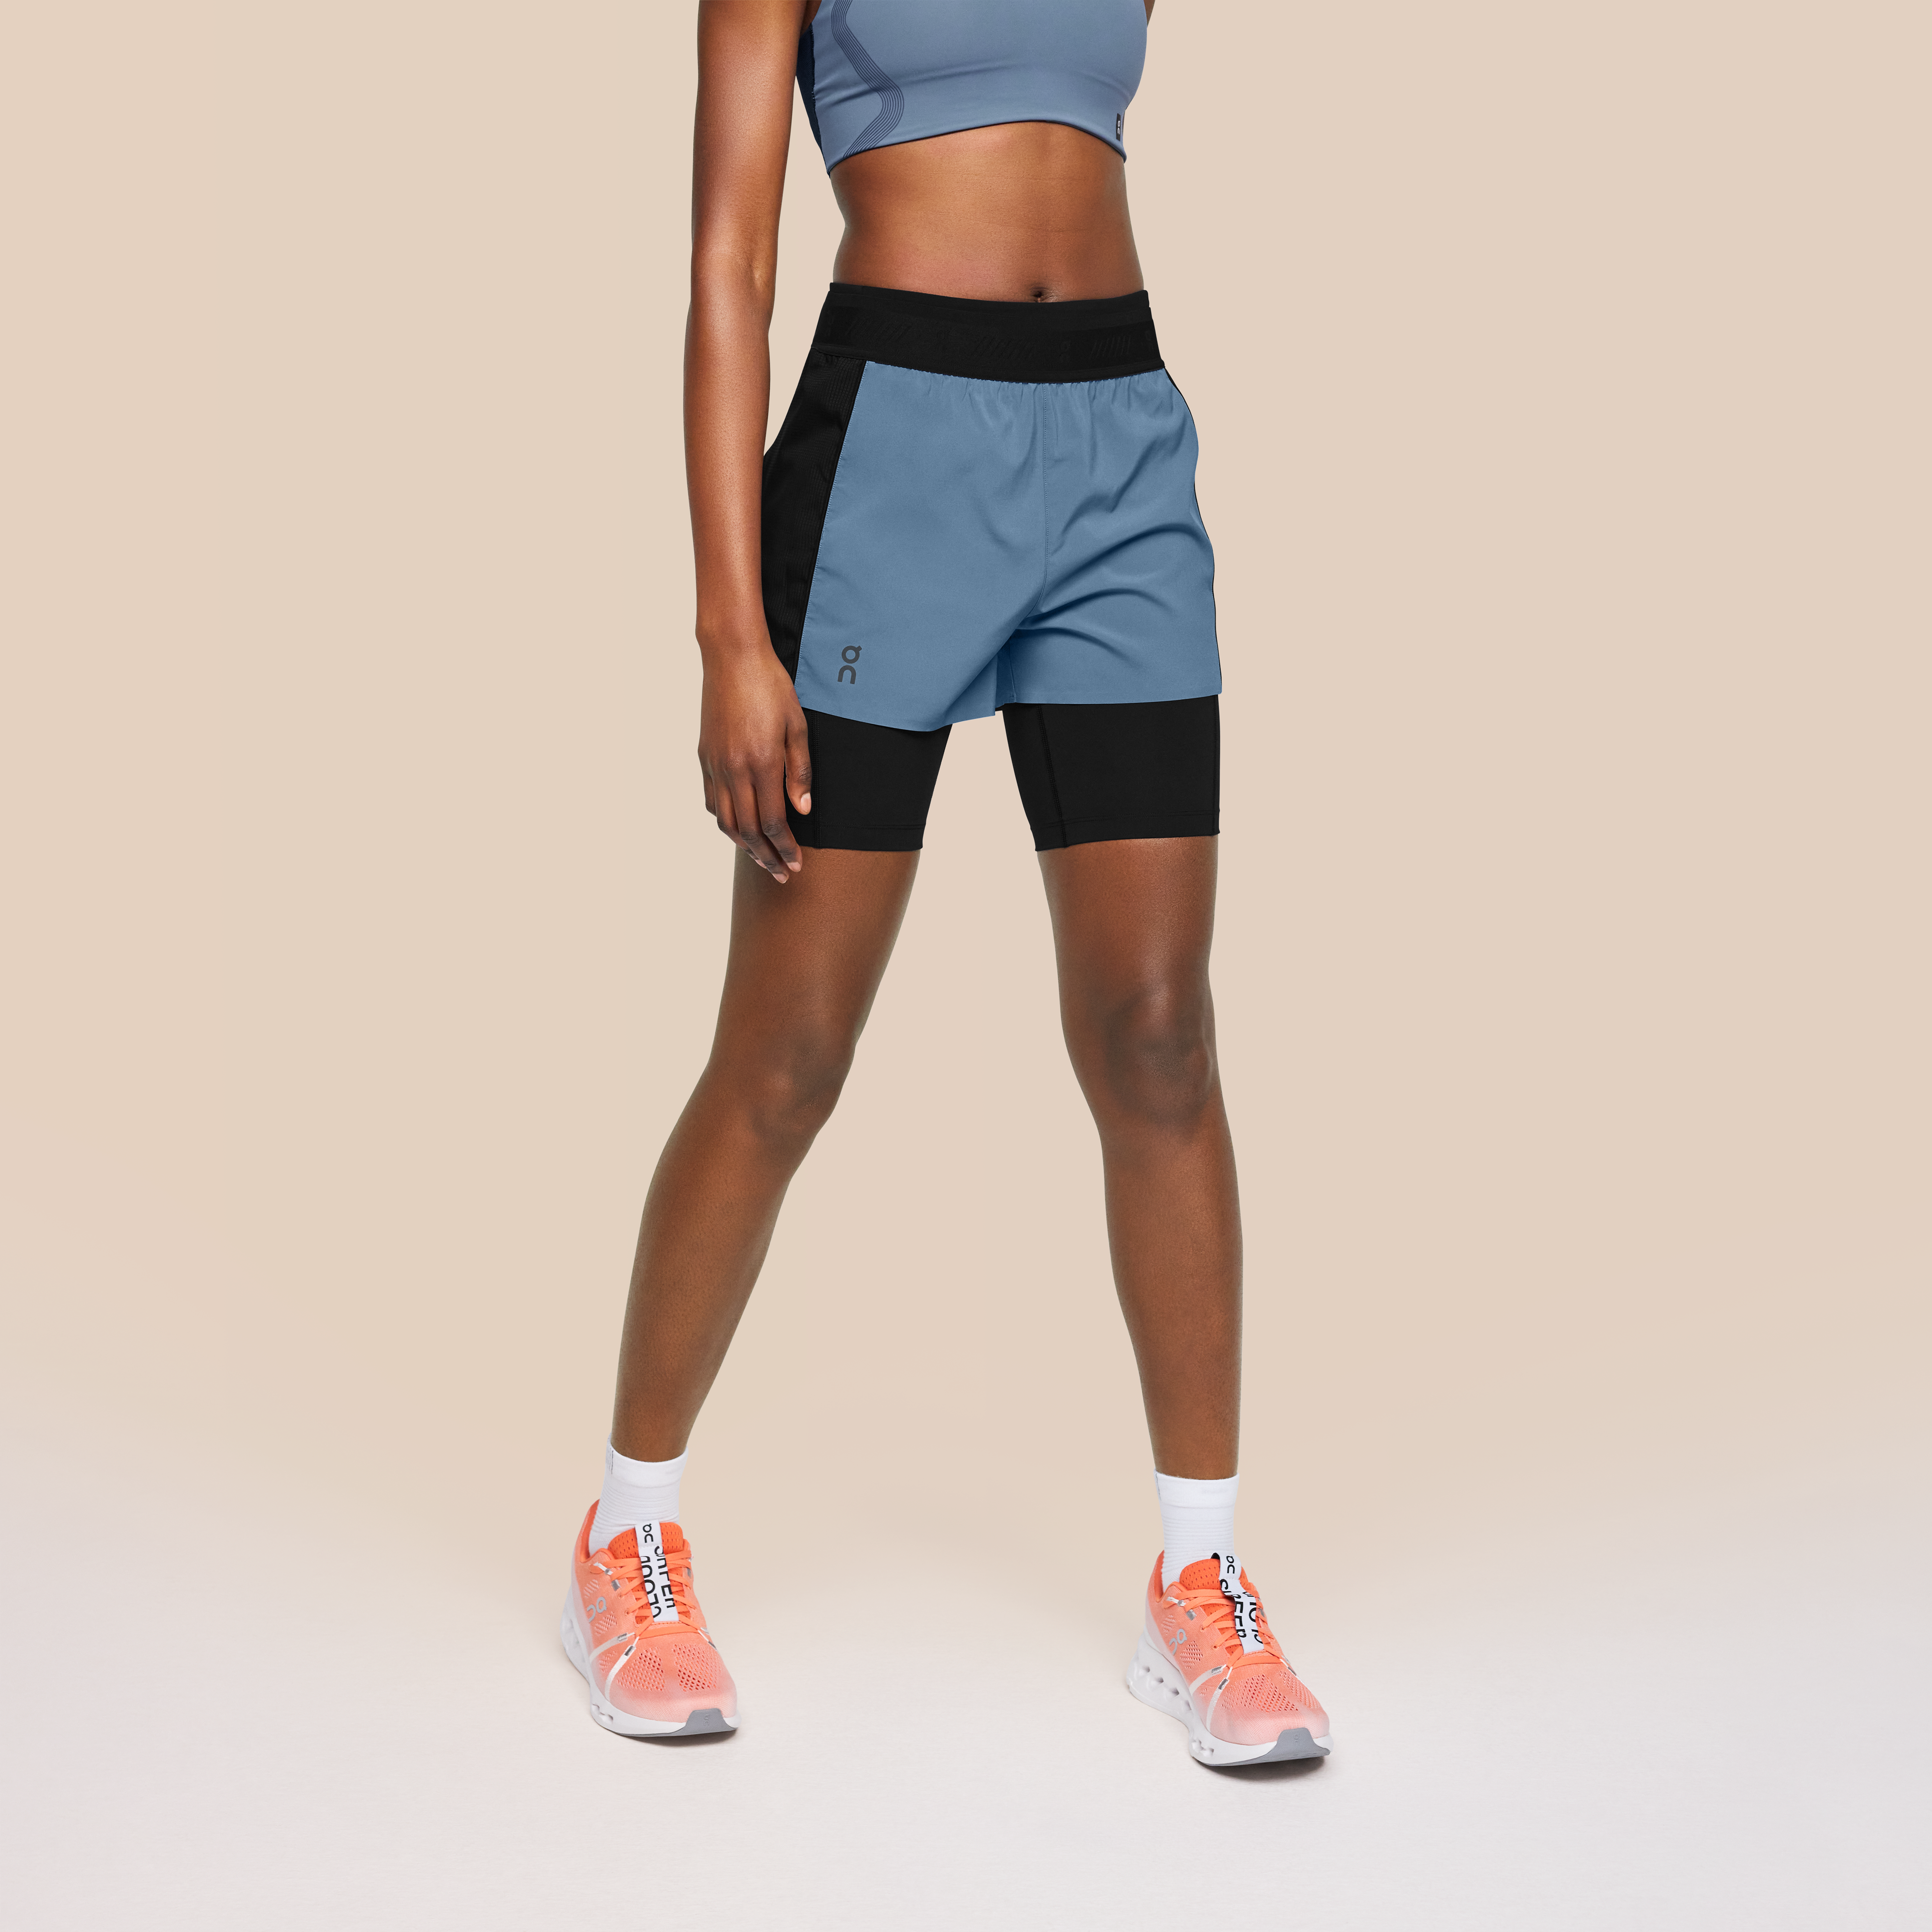 2020 Survetement Homme vest+shorts Women Sport Suits Marathon 2pcs